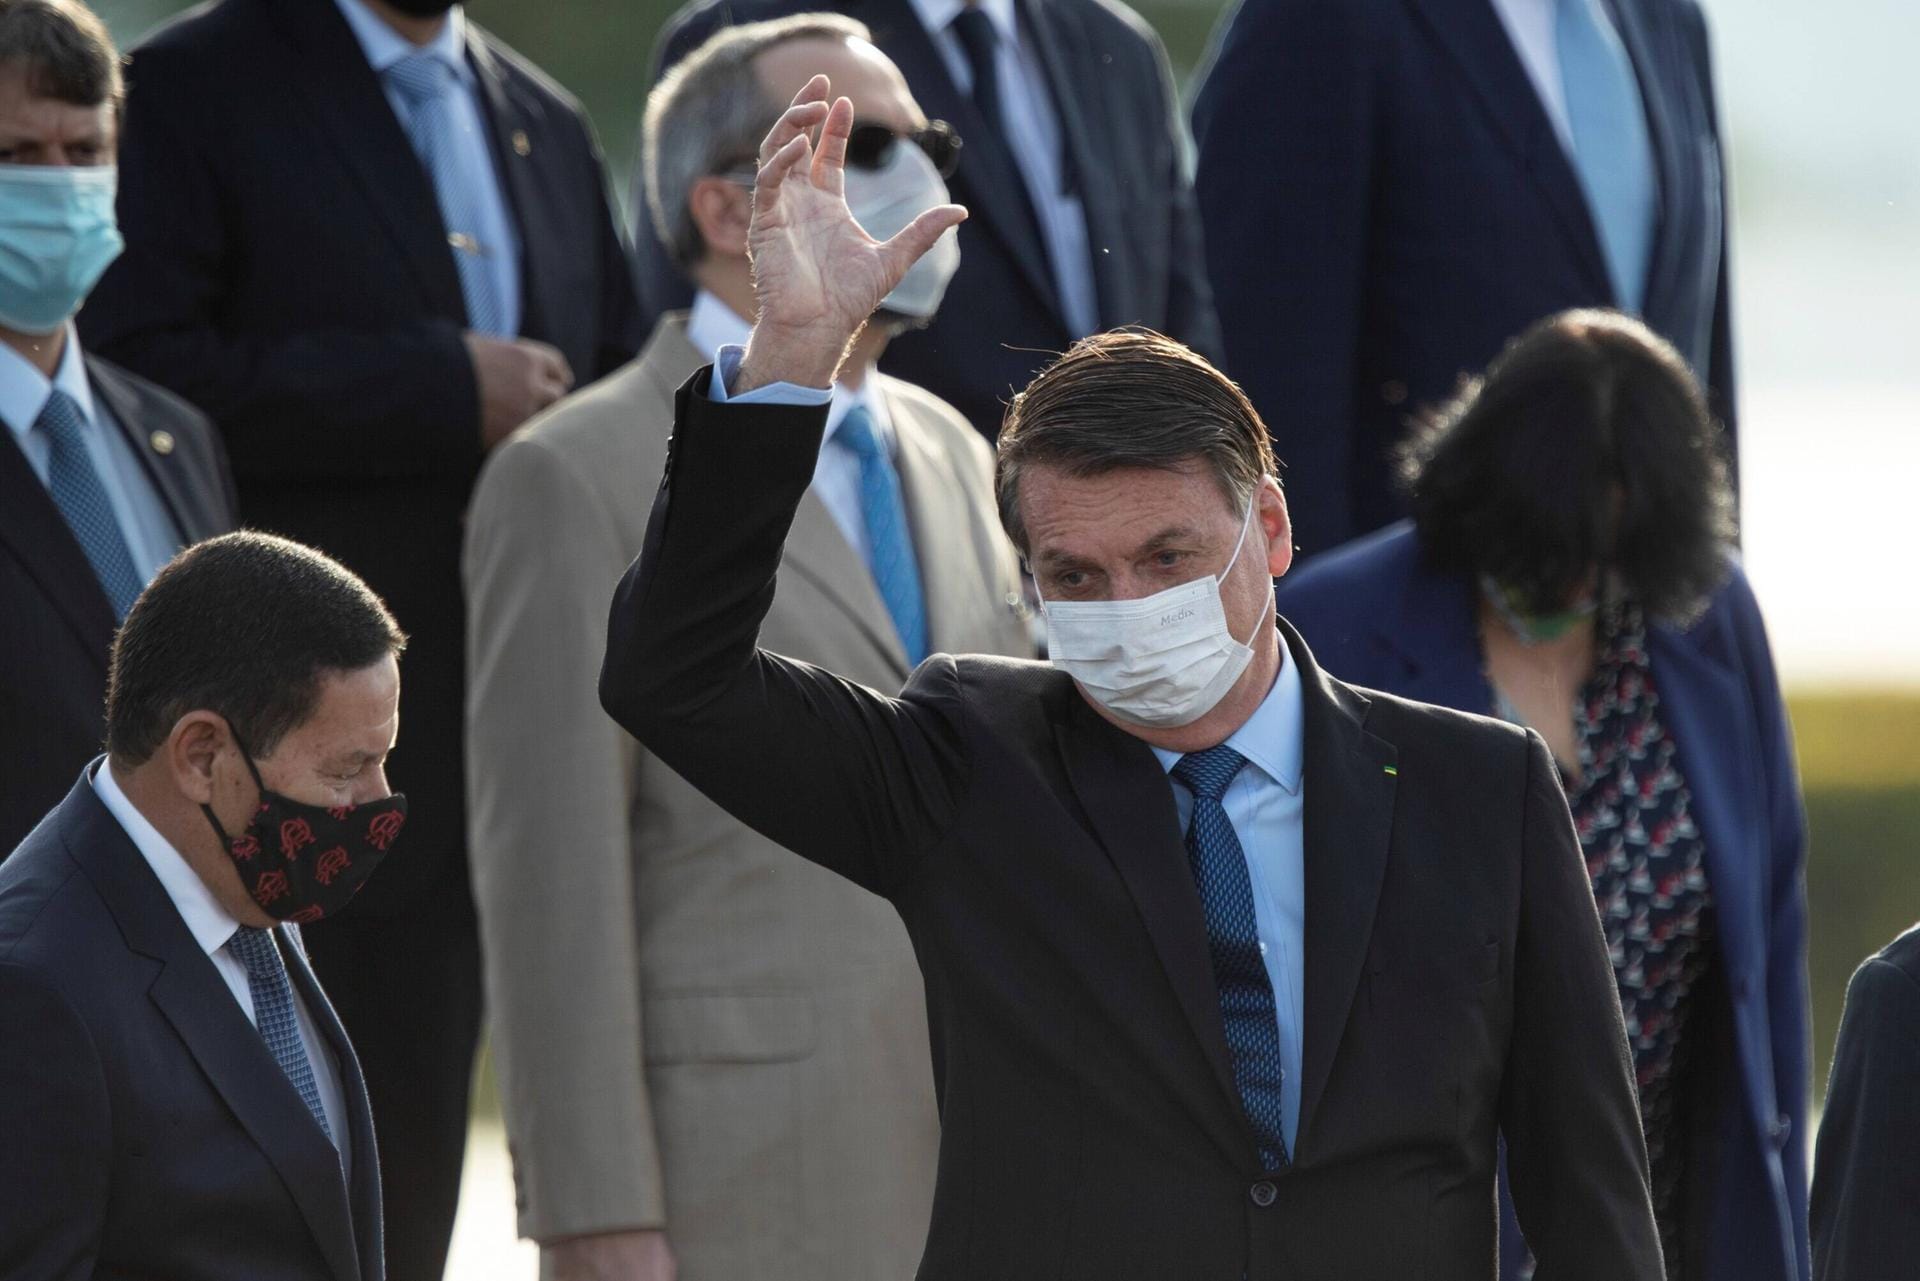 Brasilien: Jair Bolsonaro nennt das Coronavirus gerne eine "kleine Grippe". Dementsprechend locker geht Brasiliens Präsident mit der Pandemie um. Da hilft es auch wenig, dass viele Verantwortliche der brasilianischen Bundesstaaten die Gefahr längst erkannt haben. Brasilien hat mittlerweile die zweitmeisten Infizierte weltweit – und sie steigen täglich weiter.